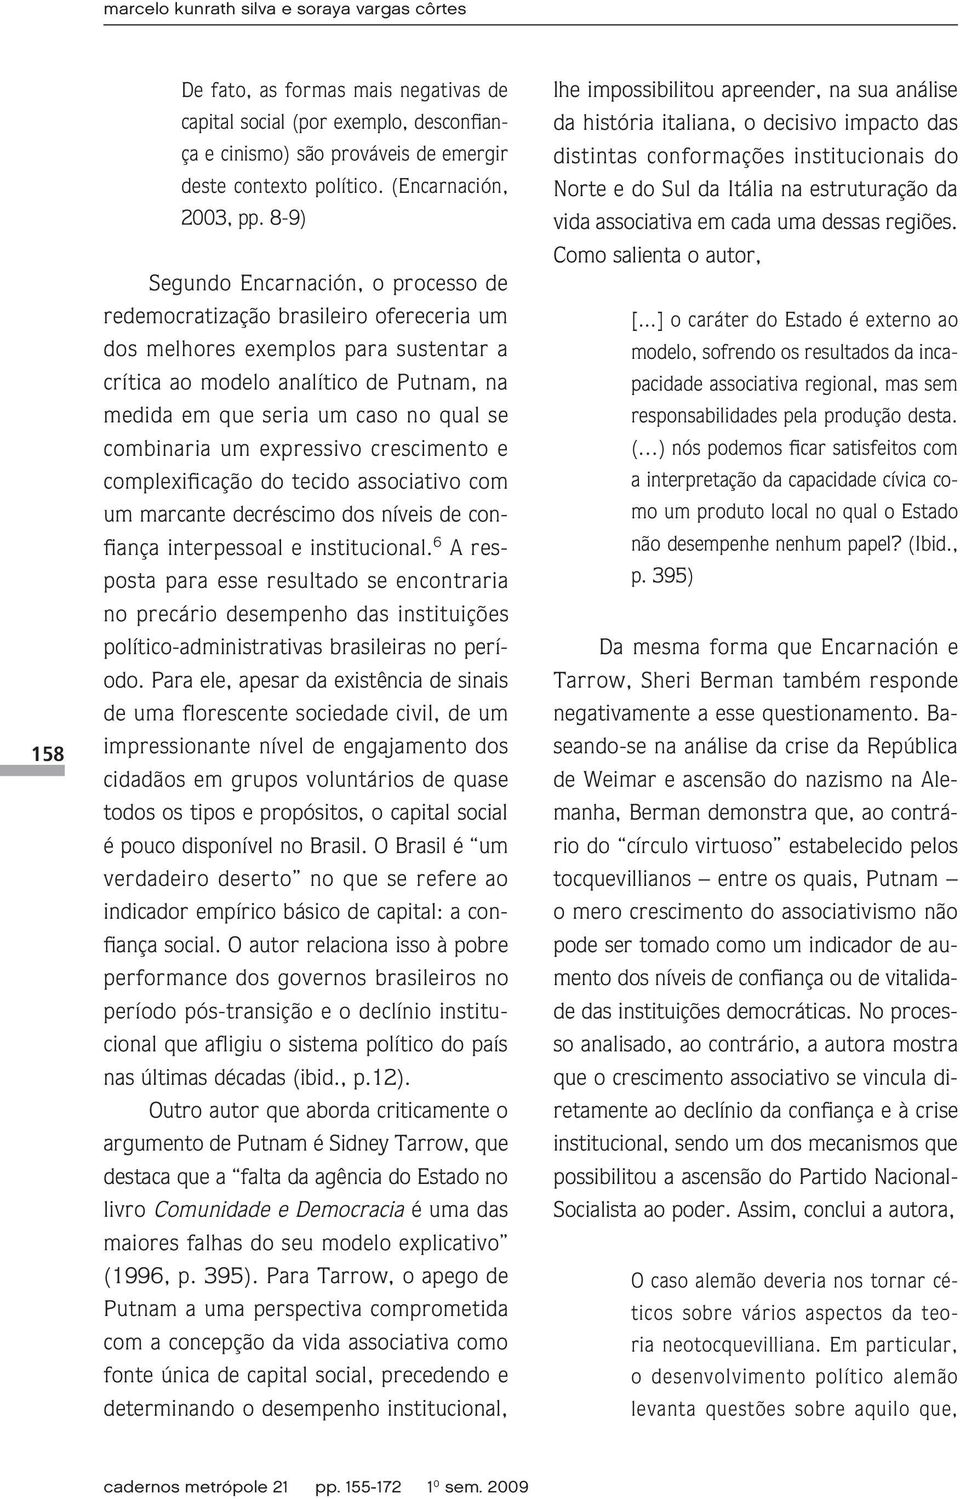 8-9) Segundo Encarnación, o processo de redemocratização brasileiro ofereceria um dos melhores exemplos para sustentar a crítica ao modelo analítico de Putnam, na medida em que seria um caso no qual